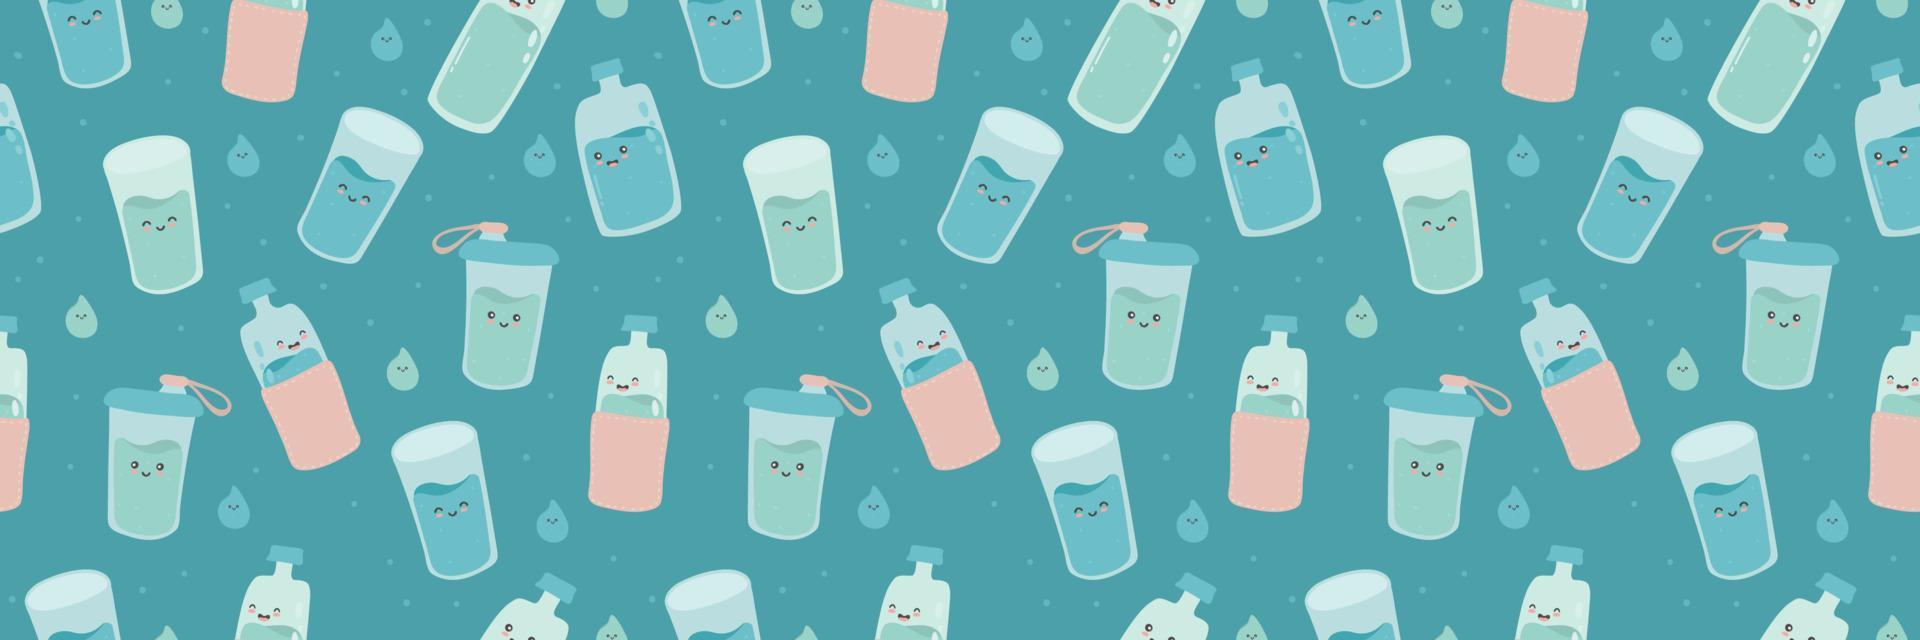 Borde horizontal sin costuras, banner web con lindas botellas y vasos divertidos y felices. agua de carácter kawaii de dibujos animados vectoriales. beber más agua cada día concepto. vector